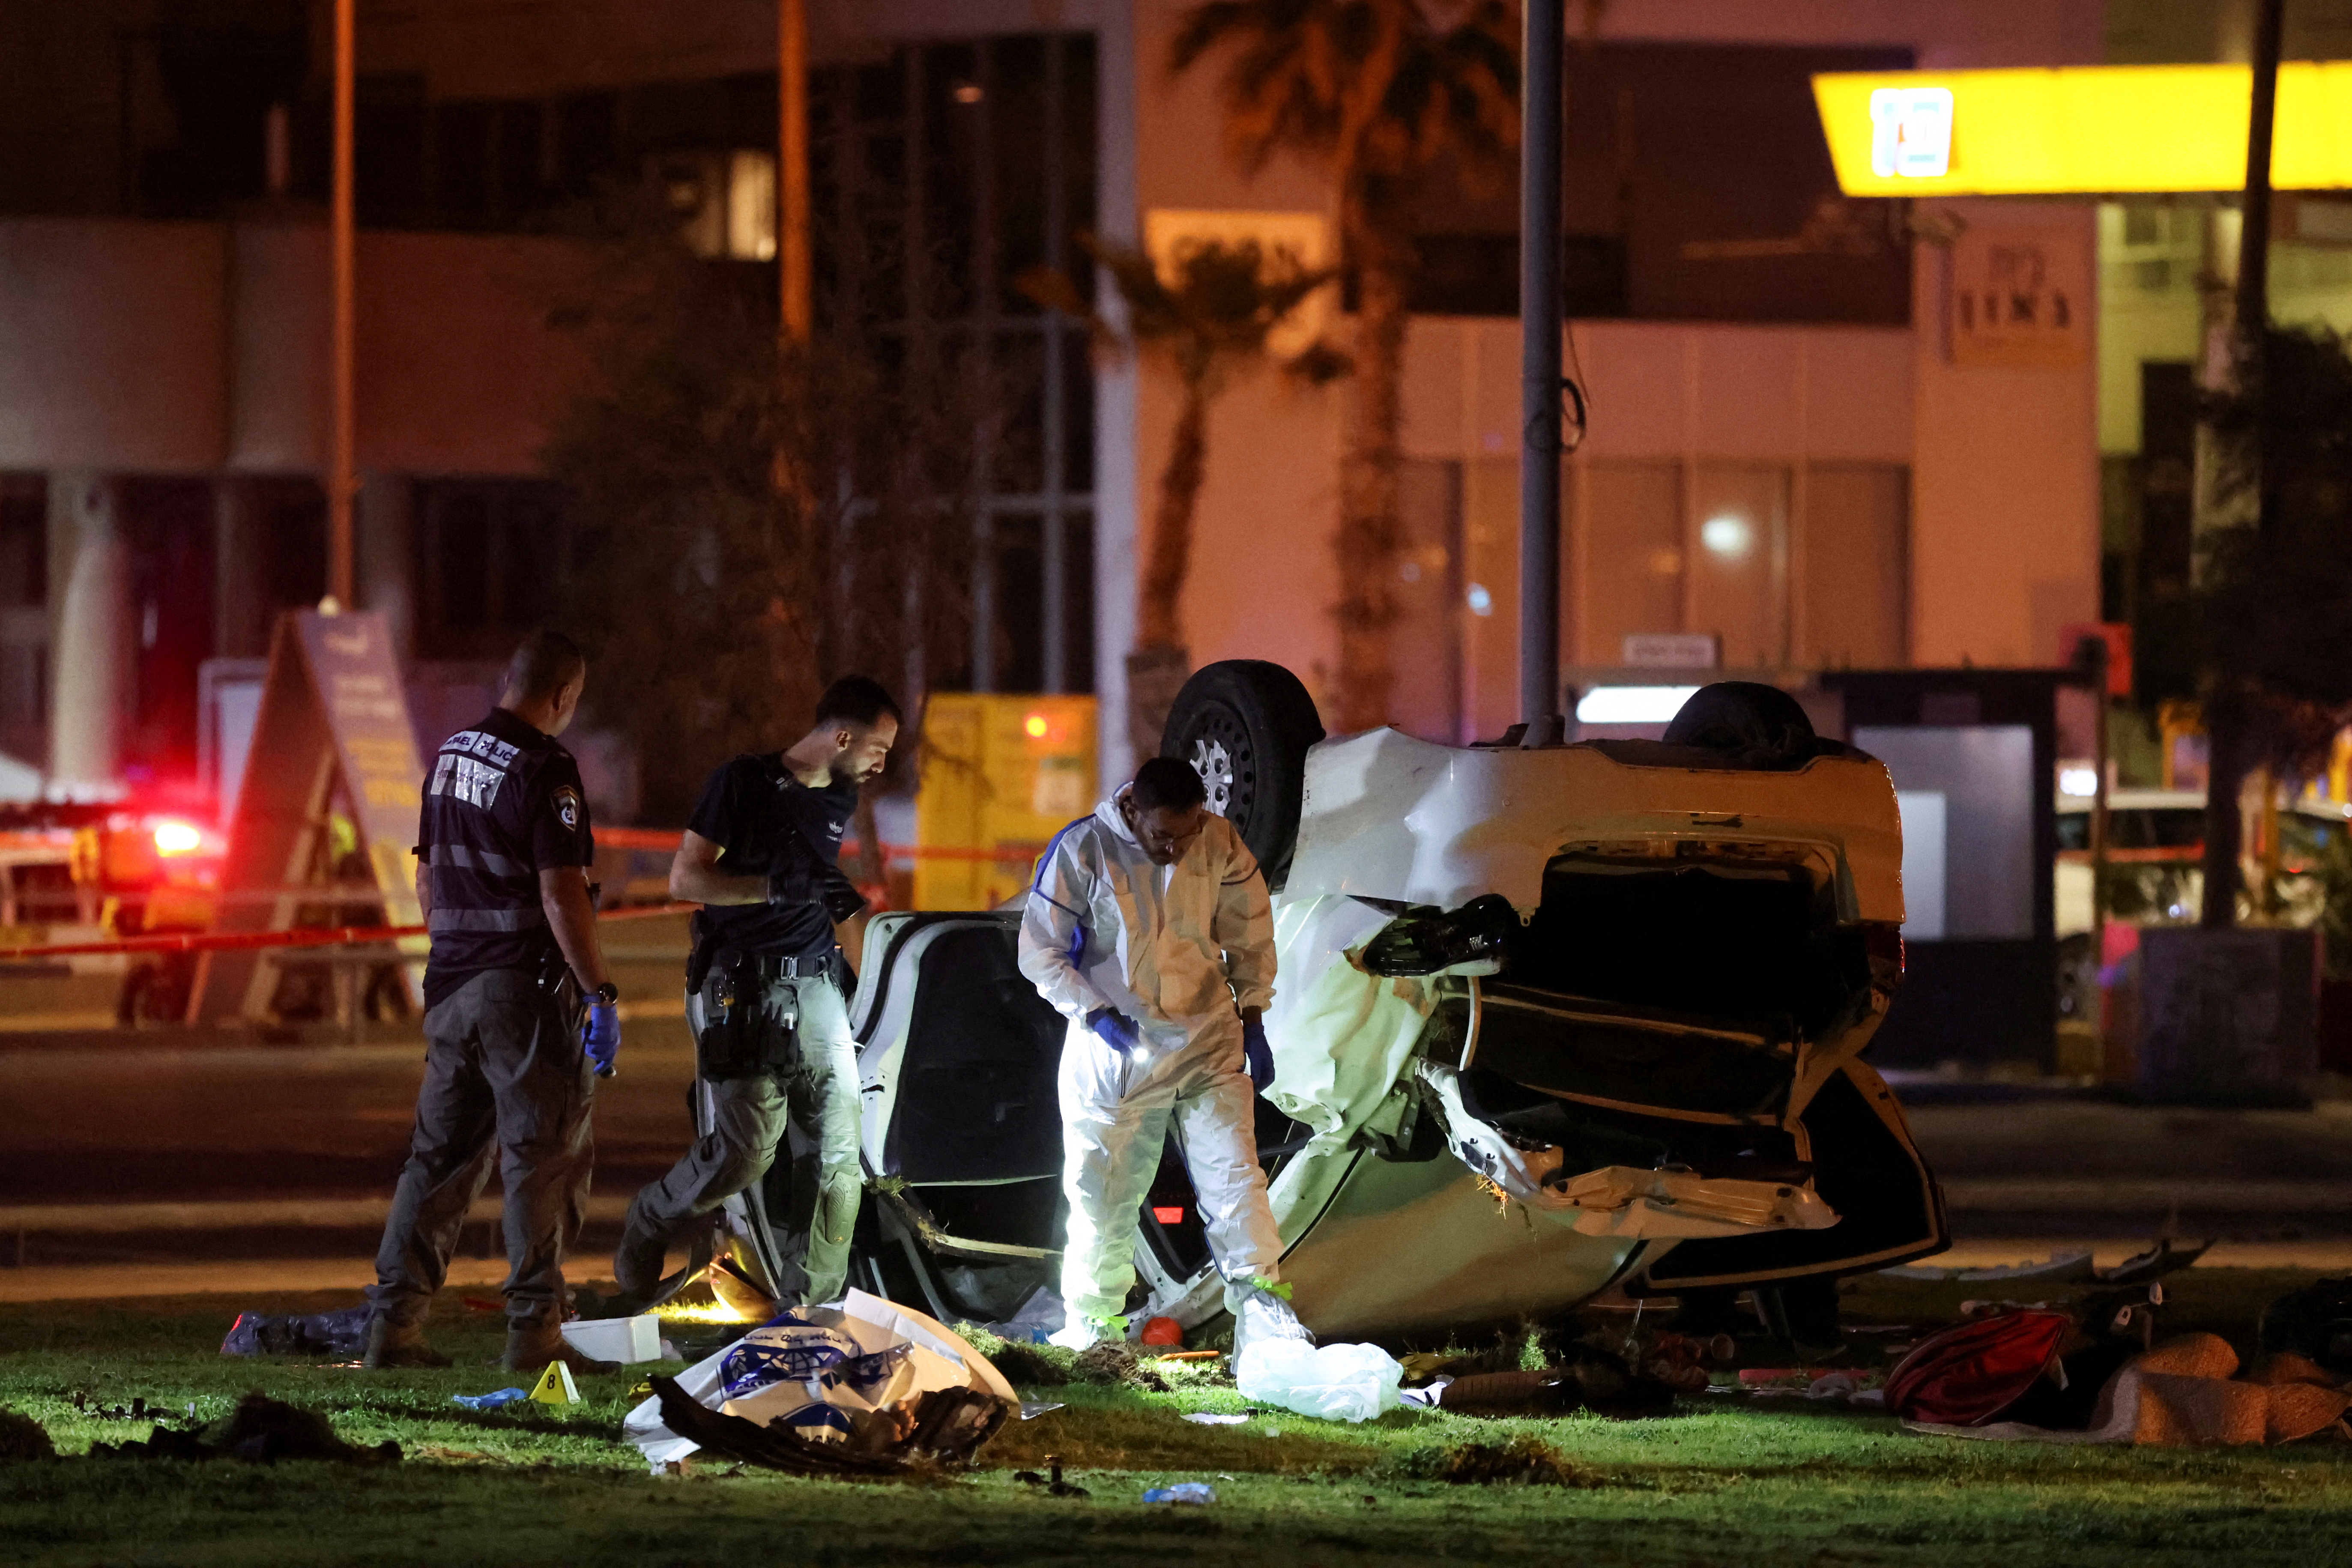 El servicio de ambulancias Magen David Adom informó que una persona murió y otras cuatro resultaron heridas en un ataque terrorista en Tel Aviv (REUTERS/Nir Elias)